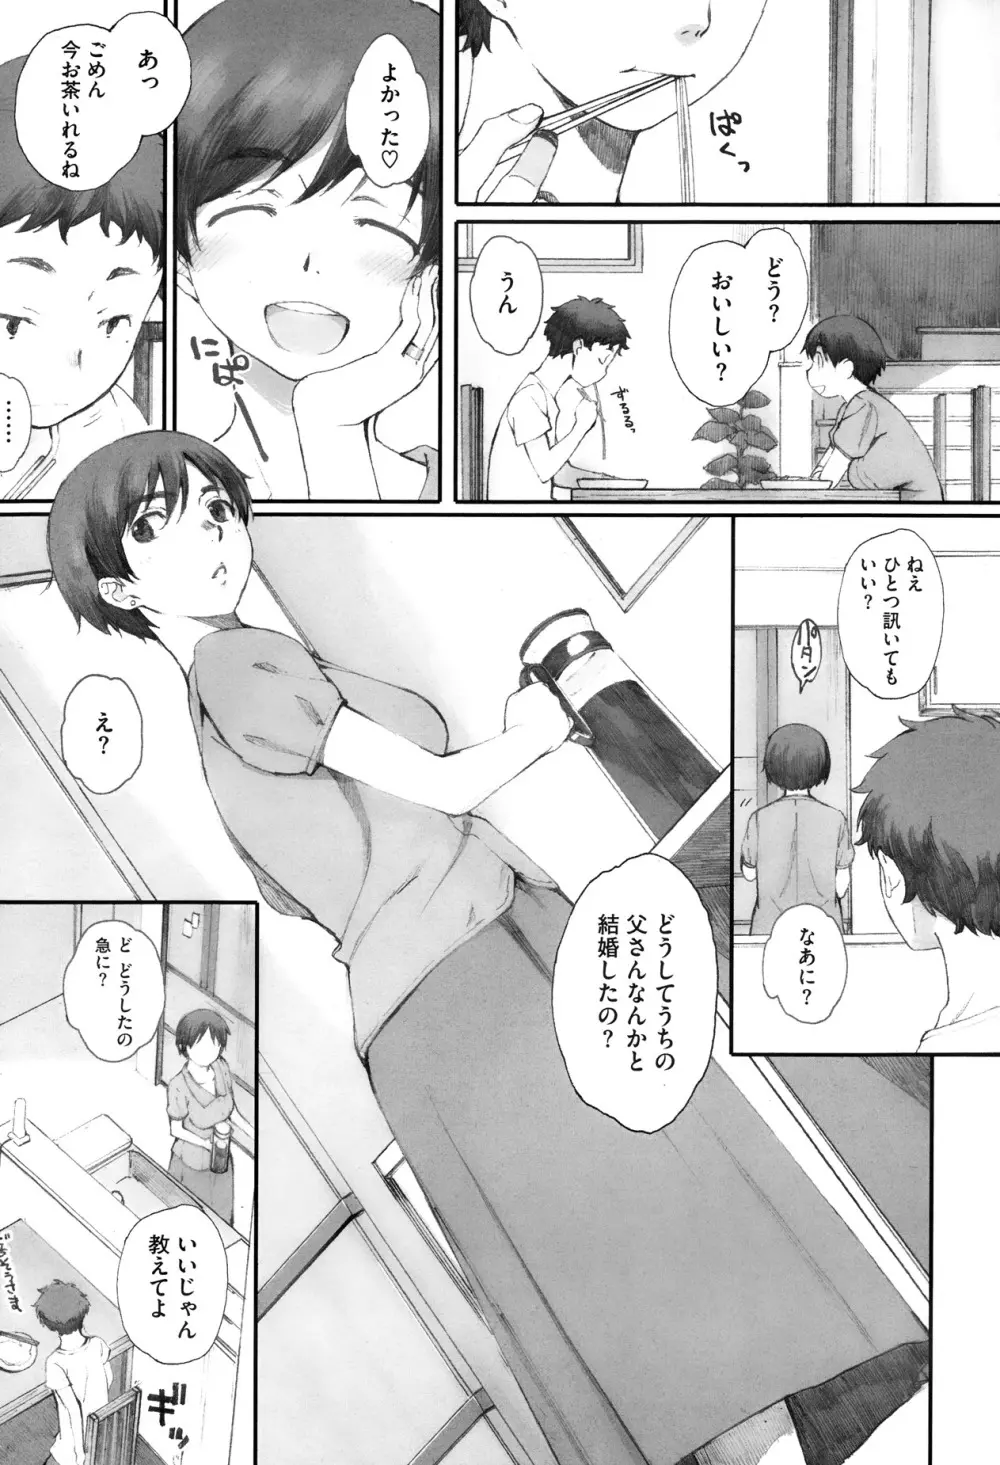 Kamakiri no su Ch.01-02 3ページ